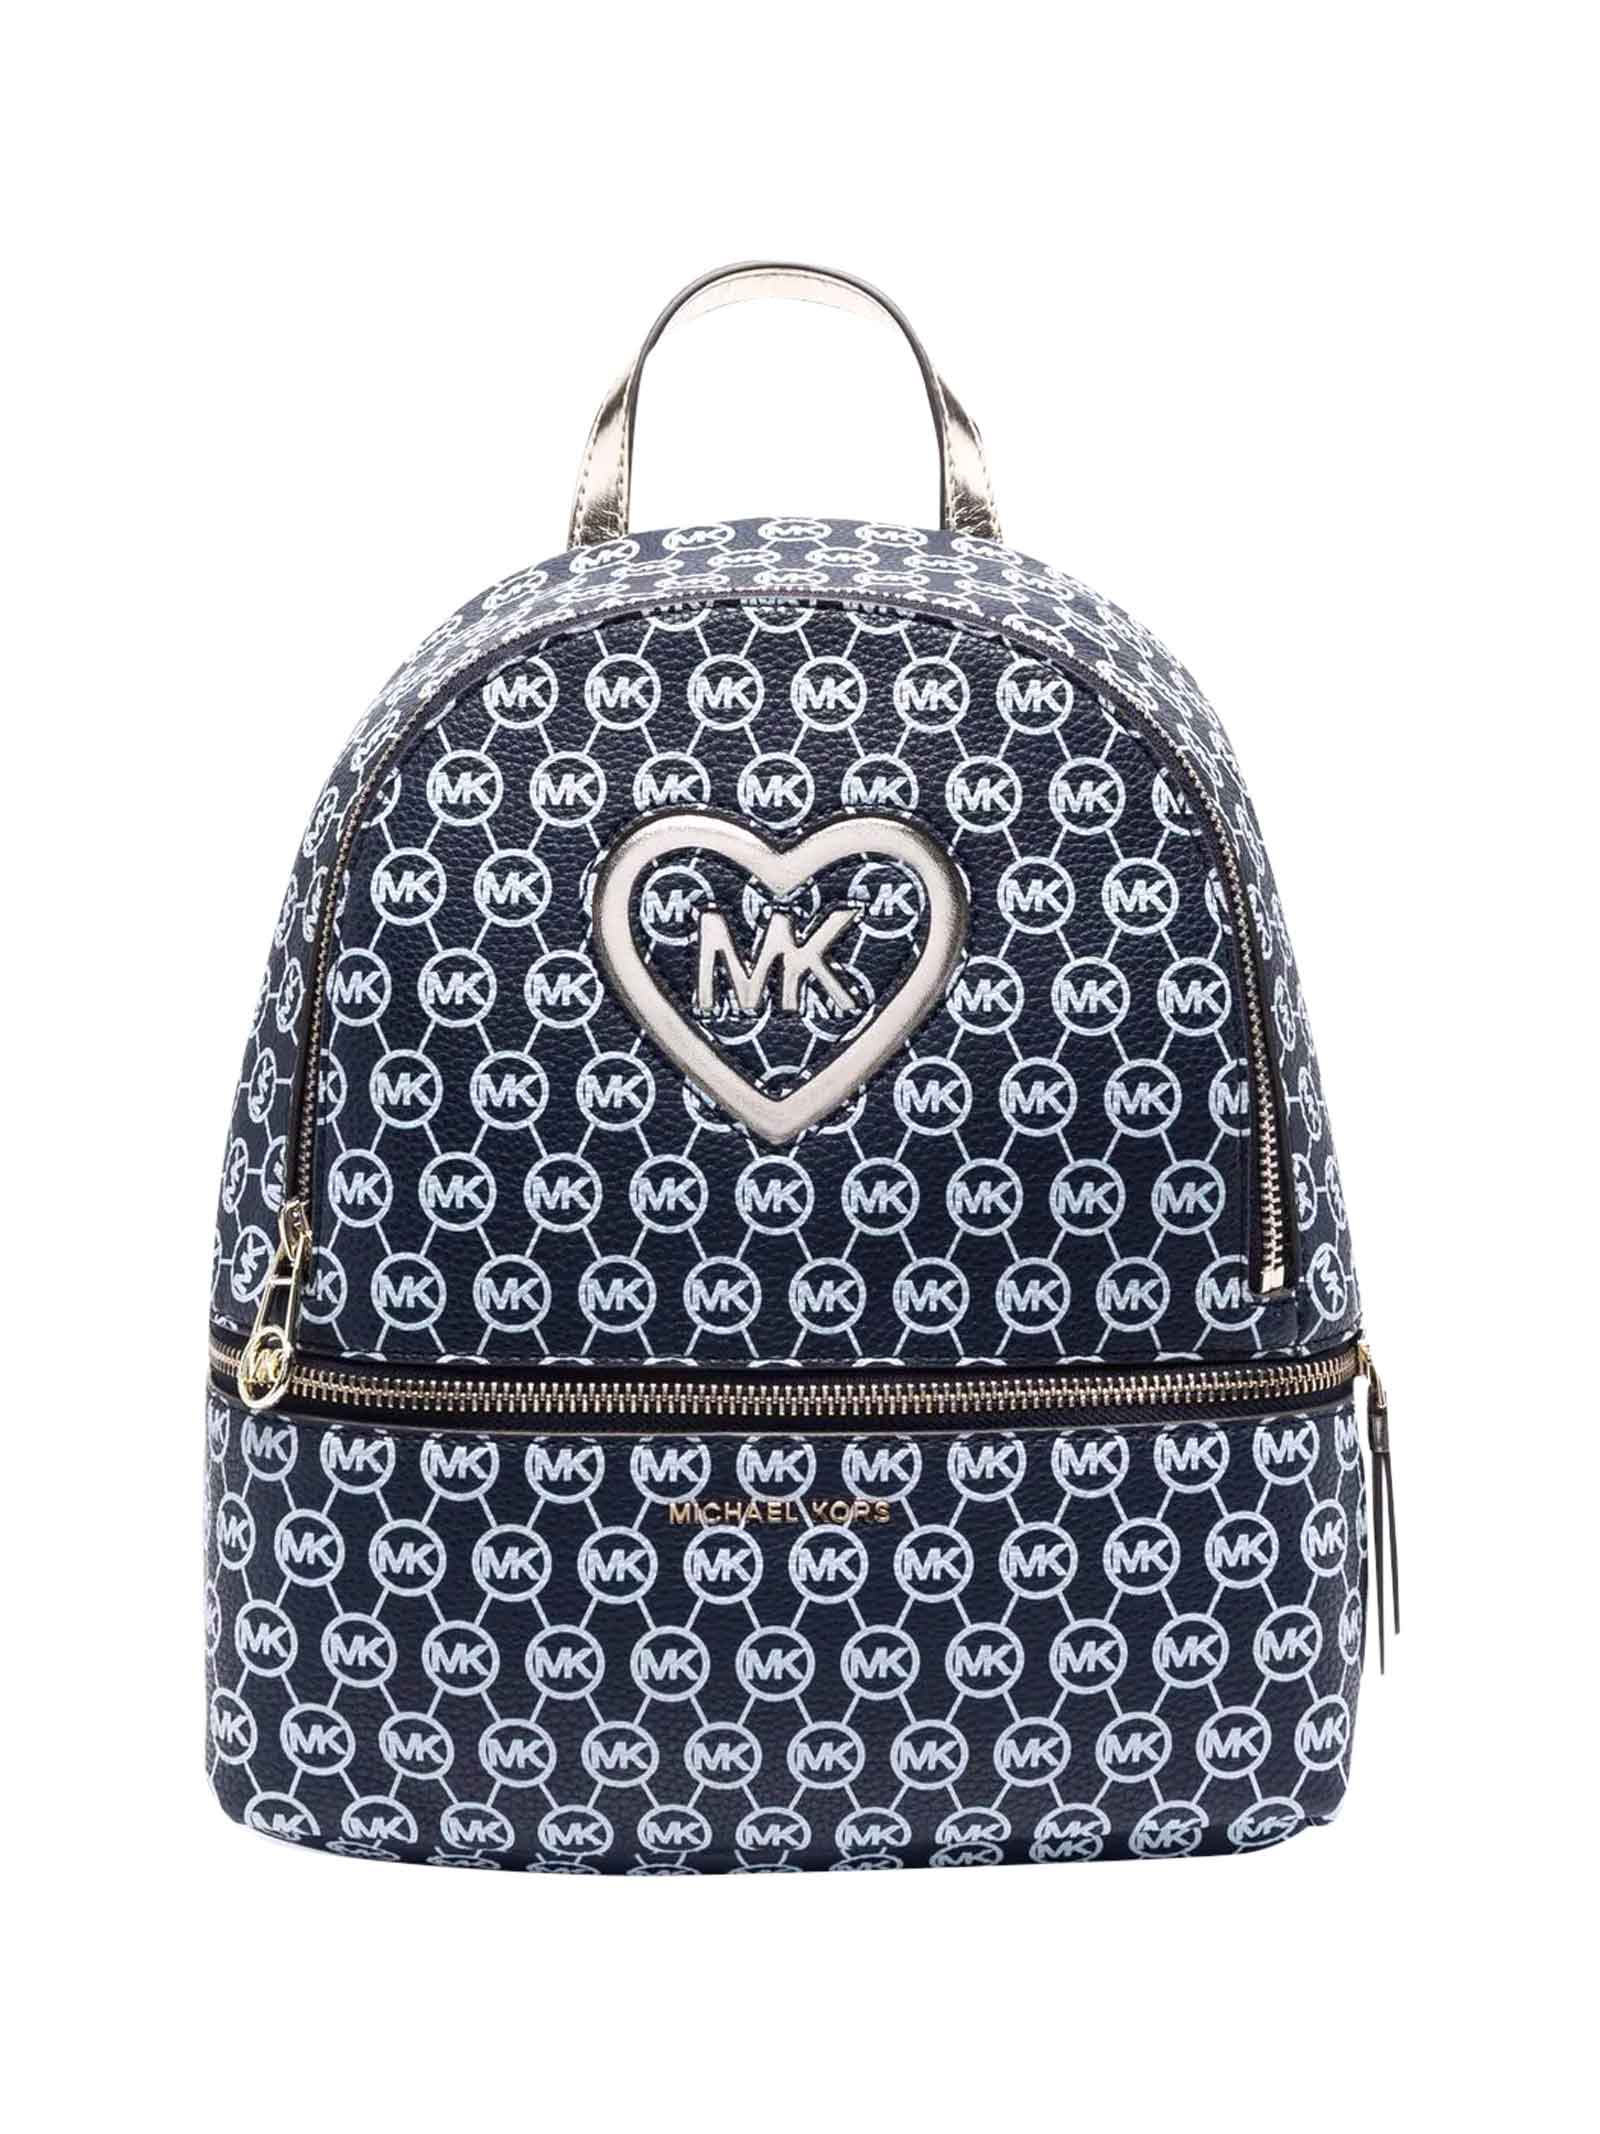 Michael Kors Blue Backpack Girl